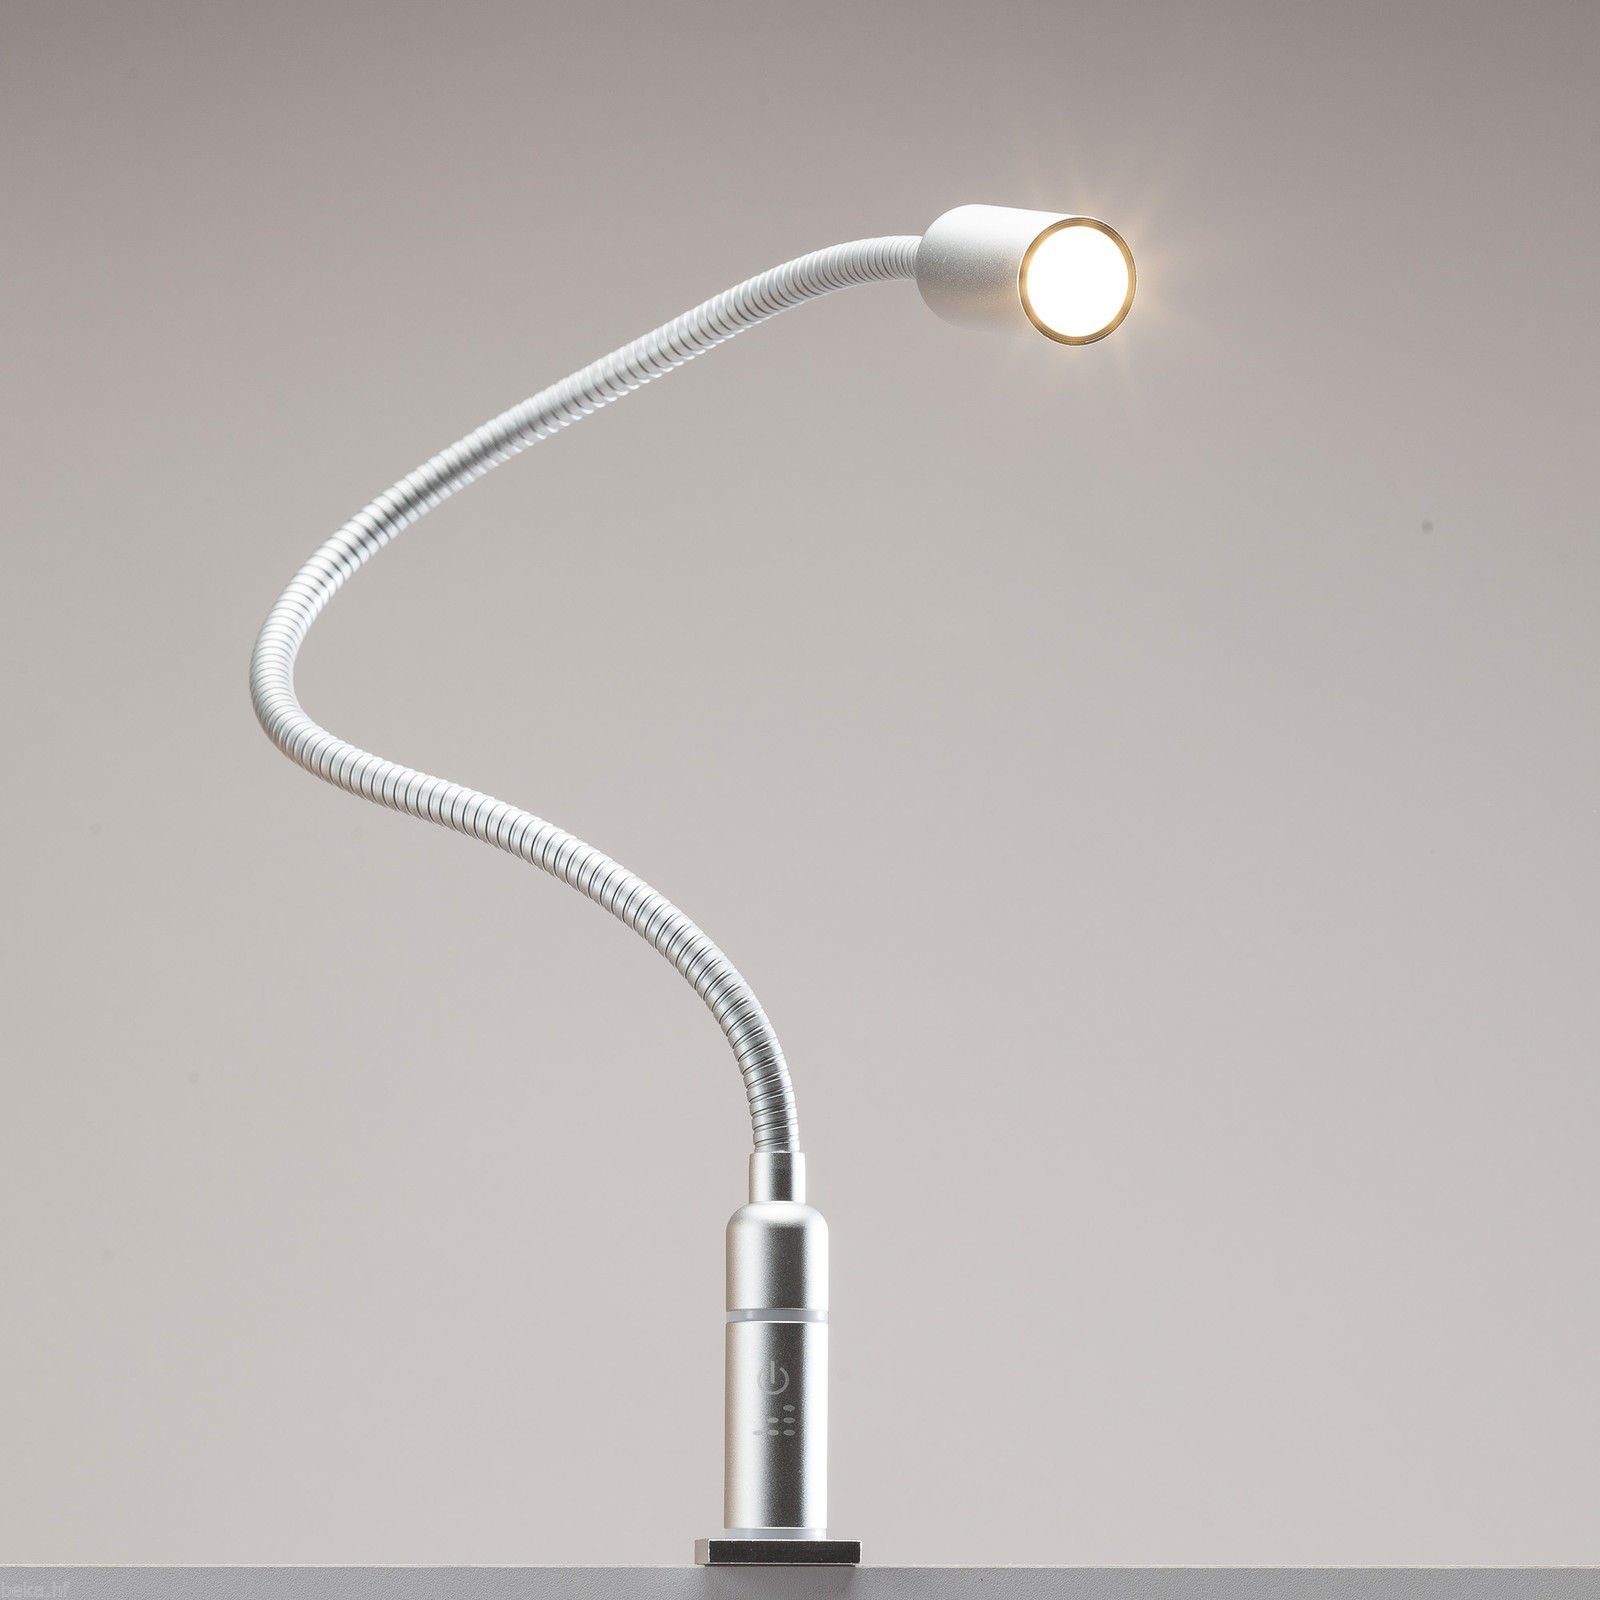 kalb Bettleuchte 3W LED Leseleuchte Nachttischlampe Bettlampe Leselampe dimmbar, 1er Set silbergrau, warmweiß